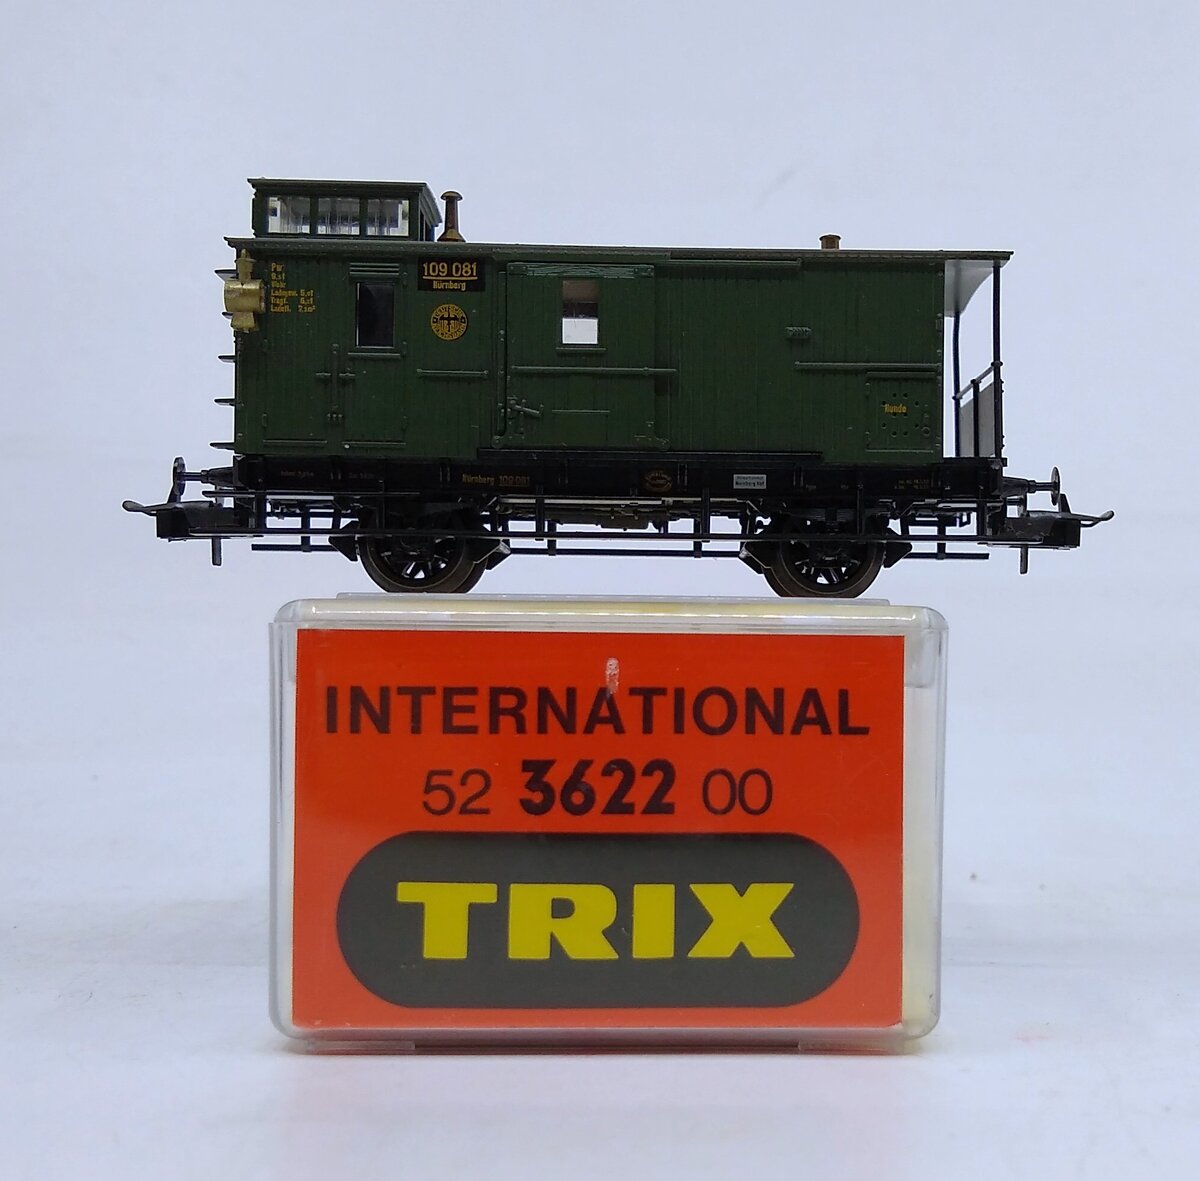 Trix 52362200 HO Scale Deutsche Reichsbahn Caboose #109 081 LN/Box